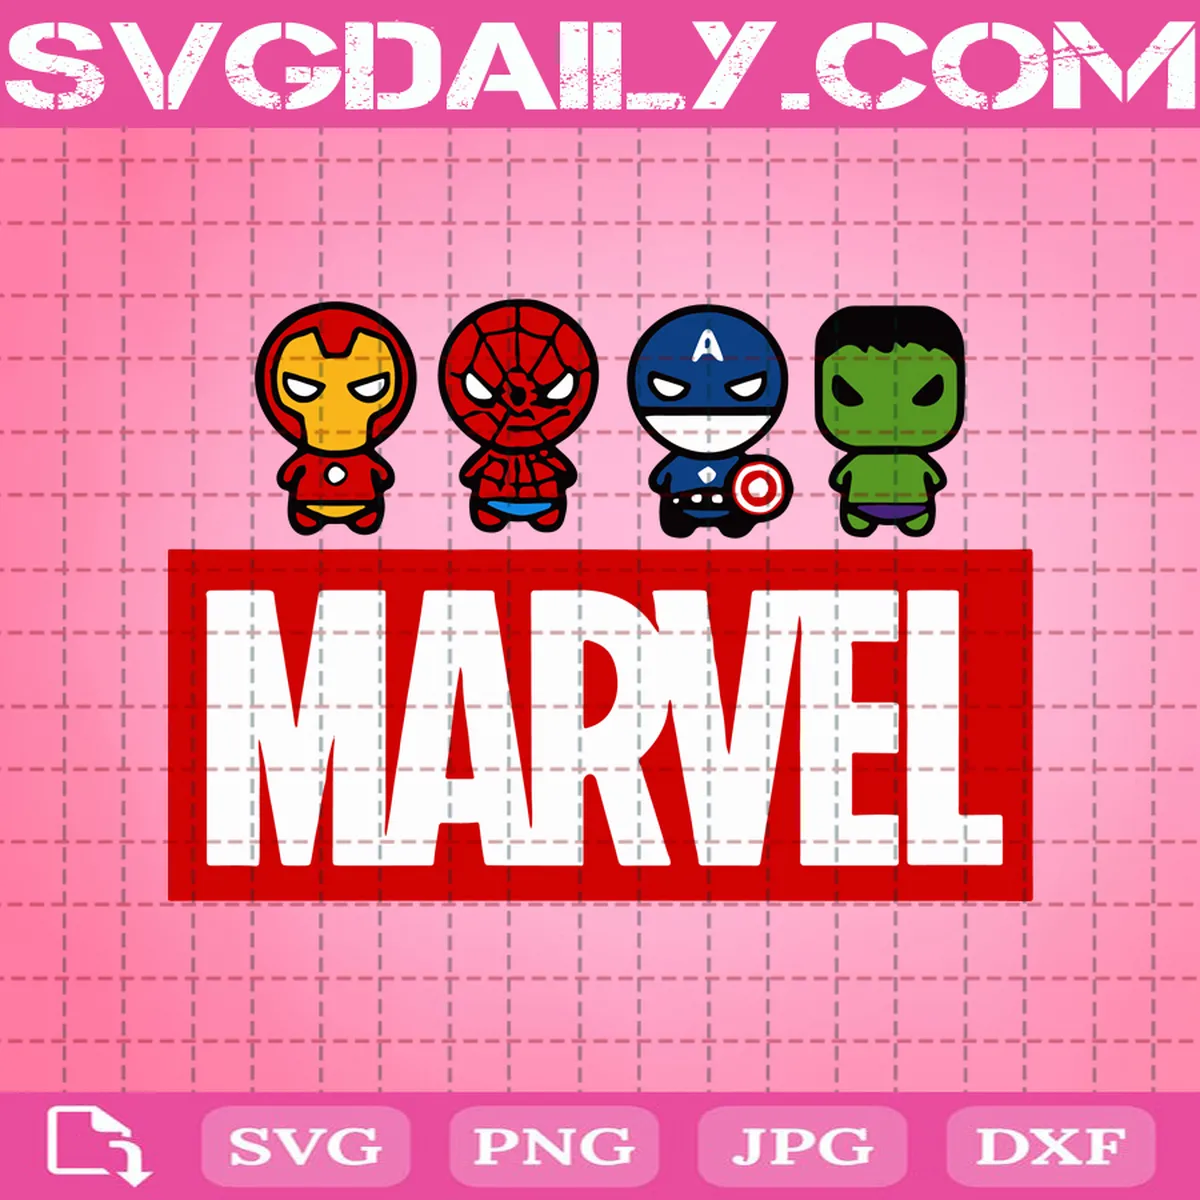 Baby Avengers Svg, Avengers Svg, Marvel Svg, Superheroes Svg, Hulk Svg, Spider Man Svg, Cartoon Svg, Avengers Lover Svg